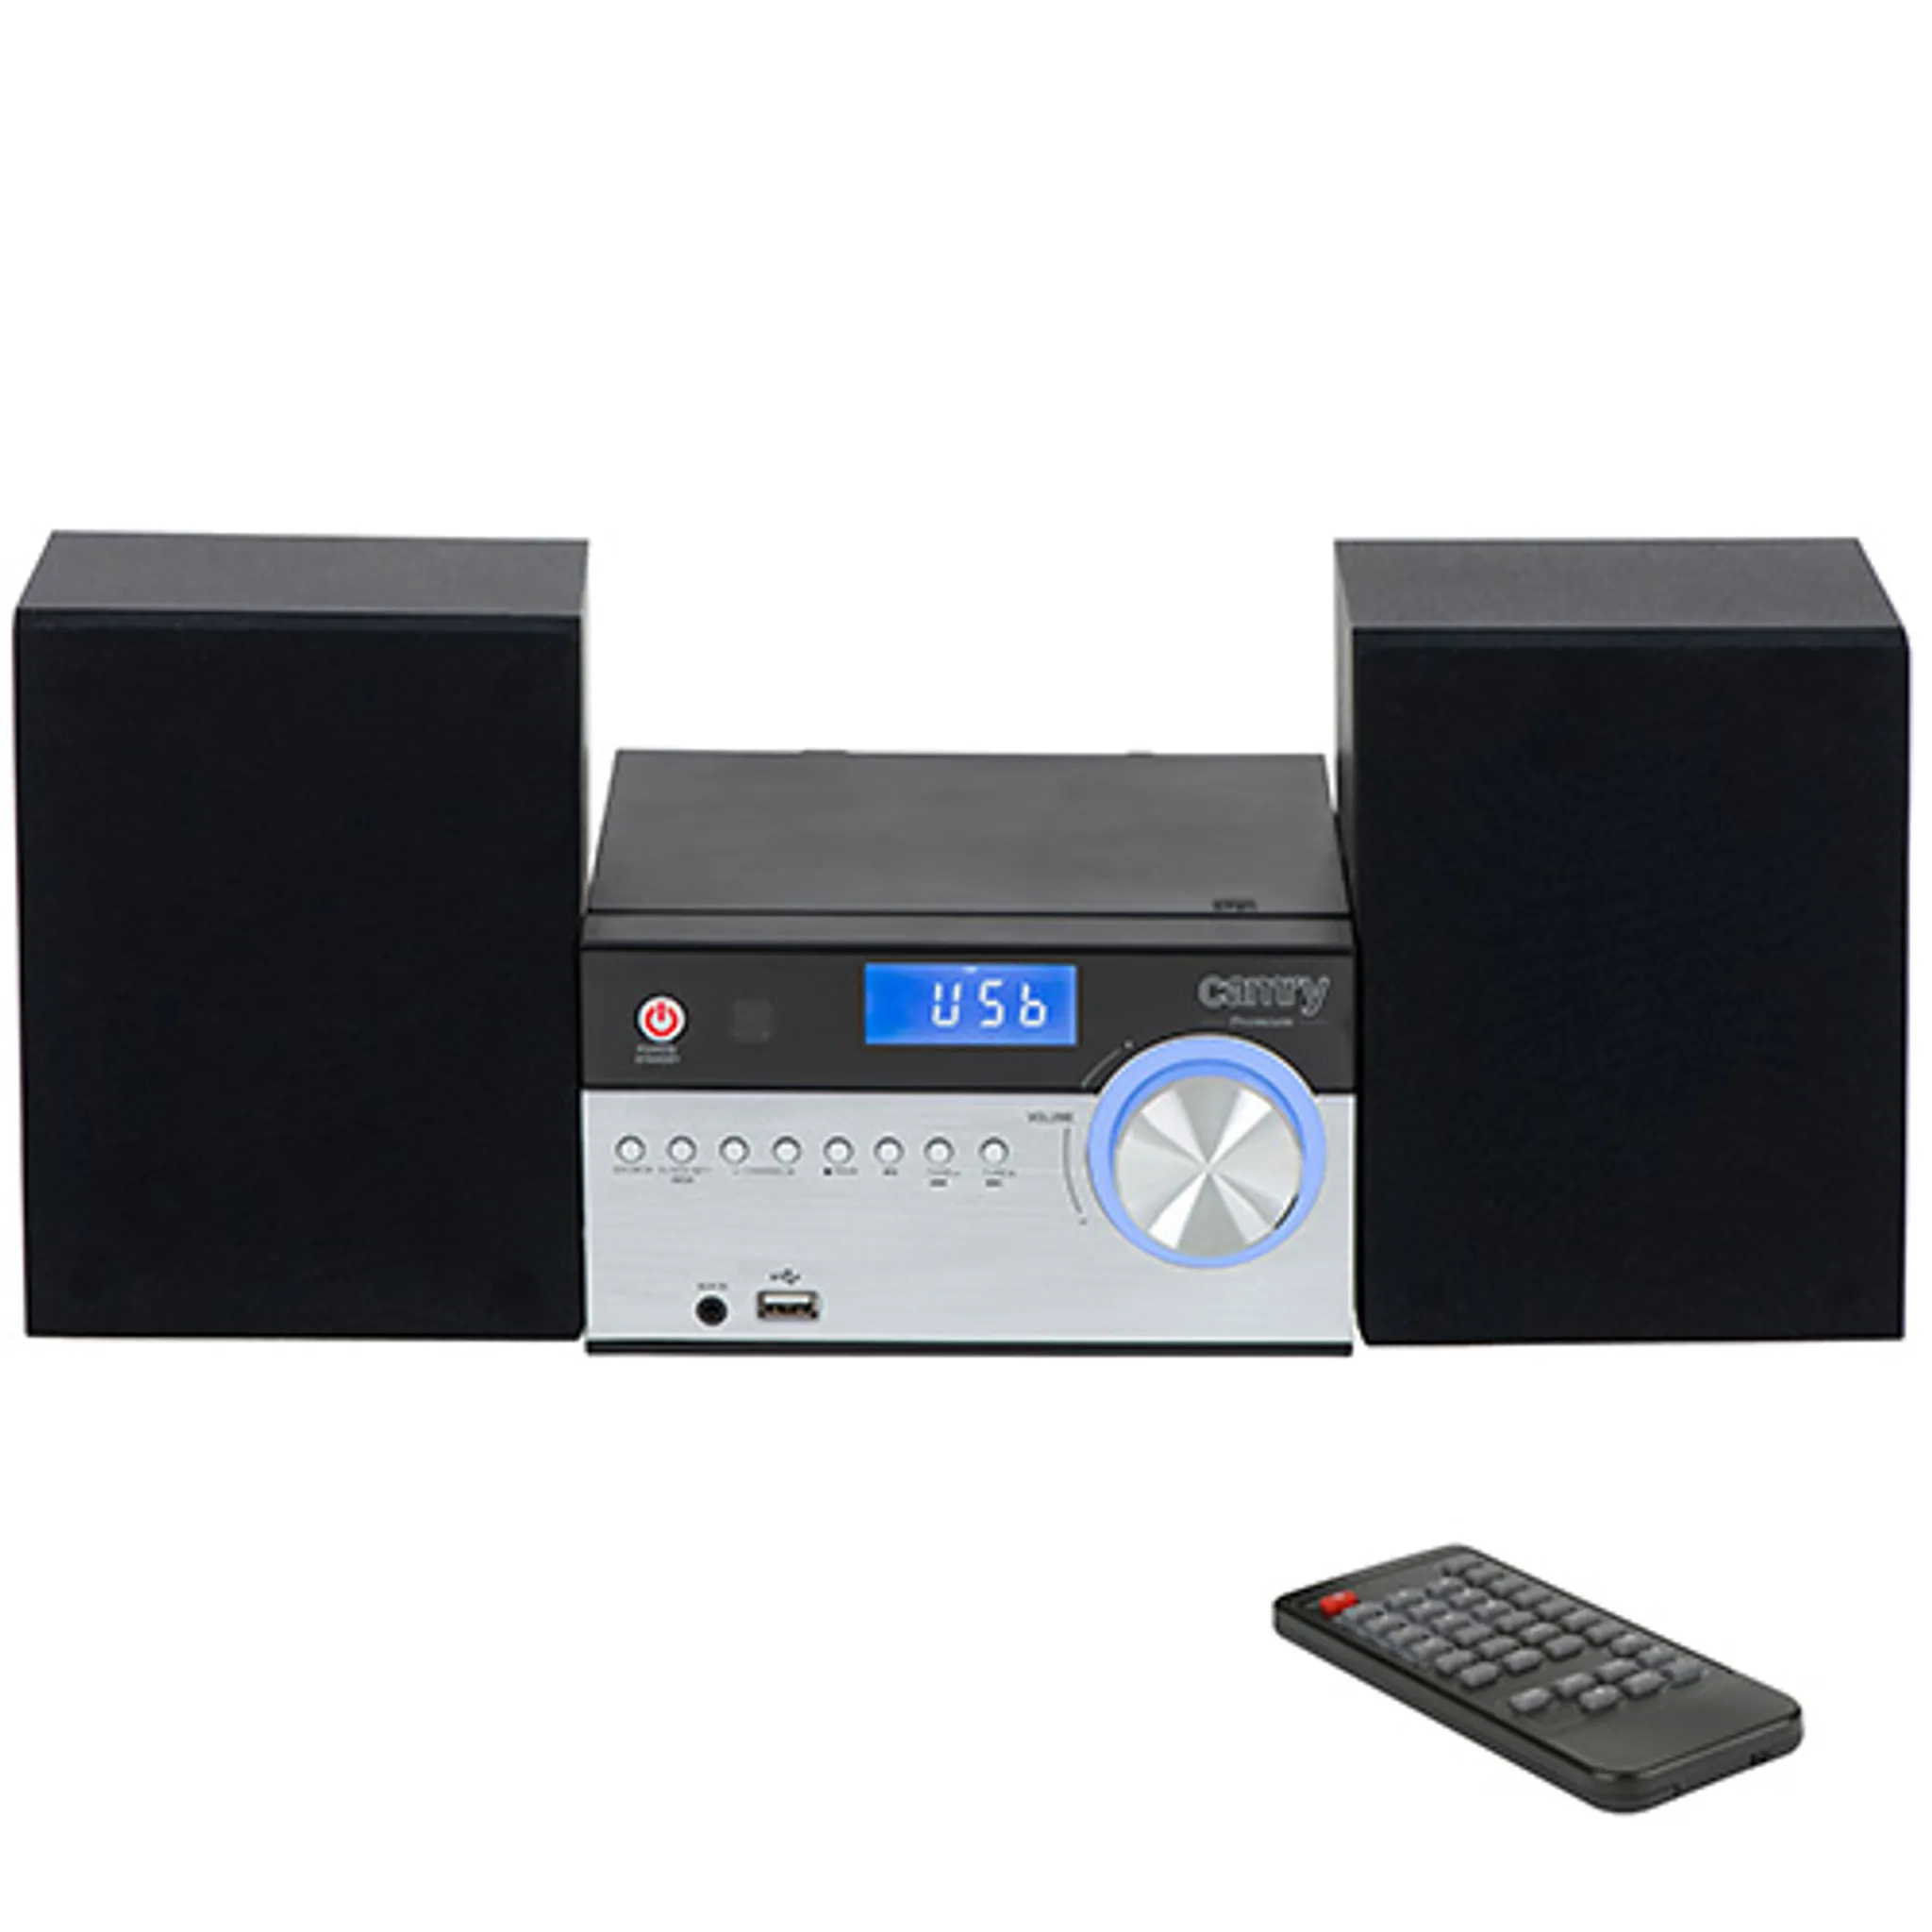 UNIVERSUM Stereoanlage mit CD, DAB+, UKW Radio, Bluetooth, AUX In und USB  MS 300-21 black